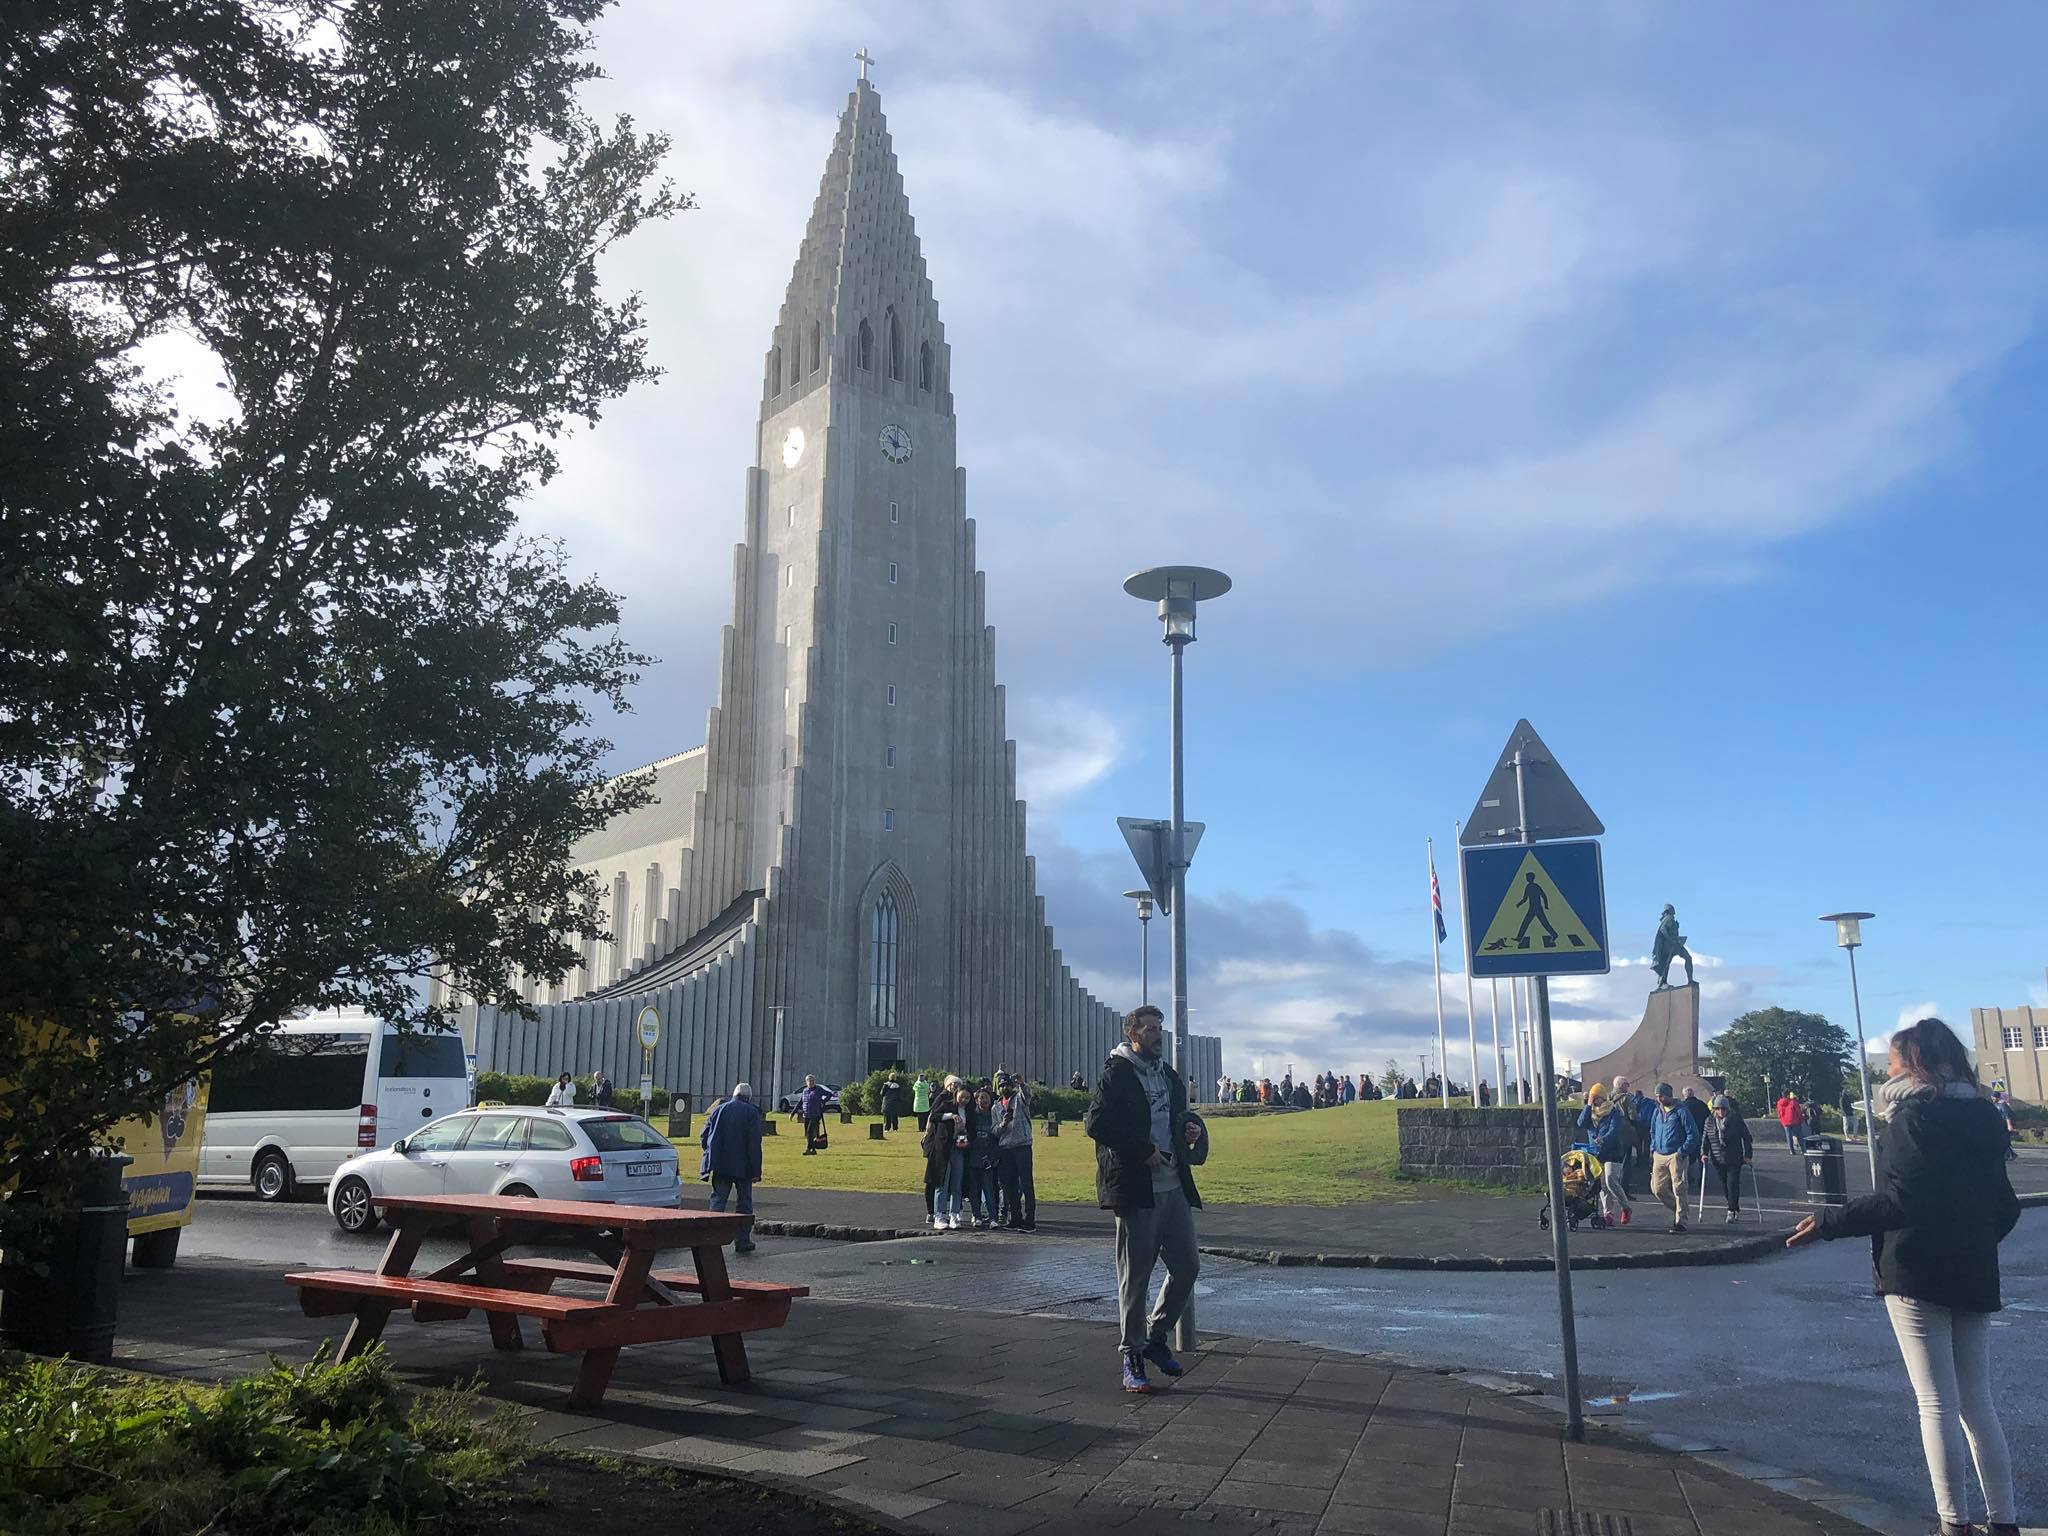 Days 1 & 2: Reykjavik / Iceland